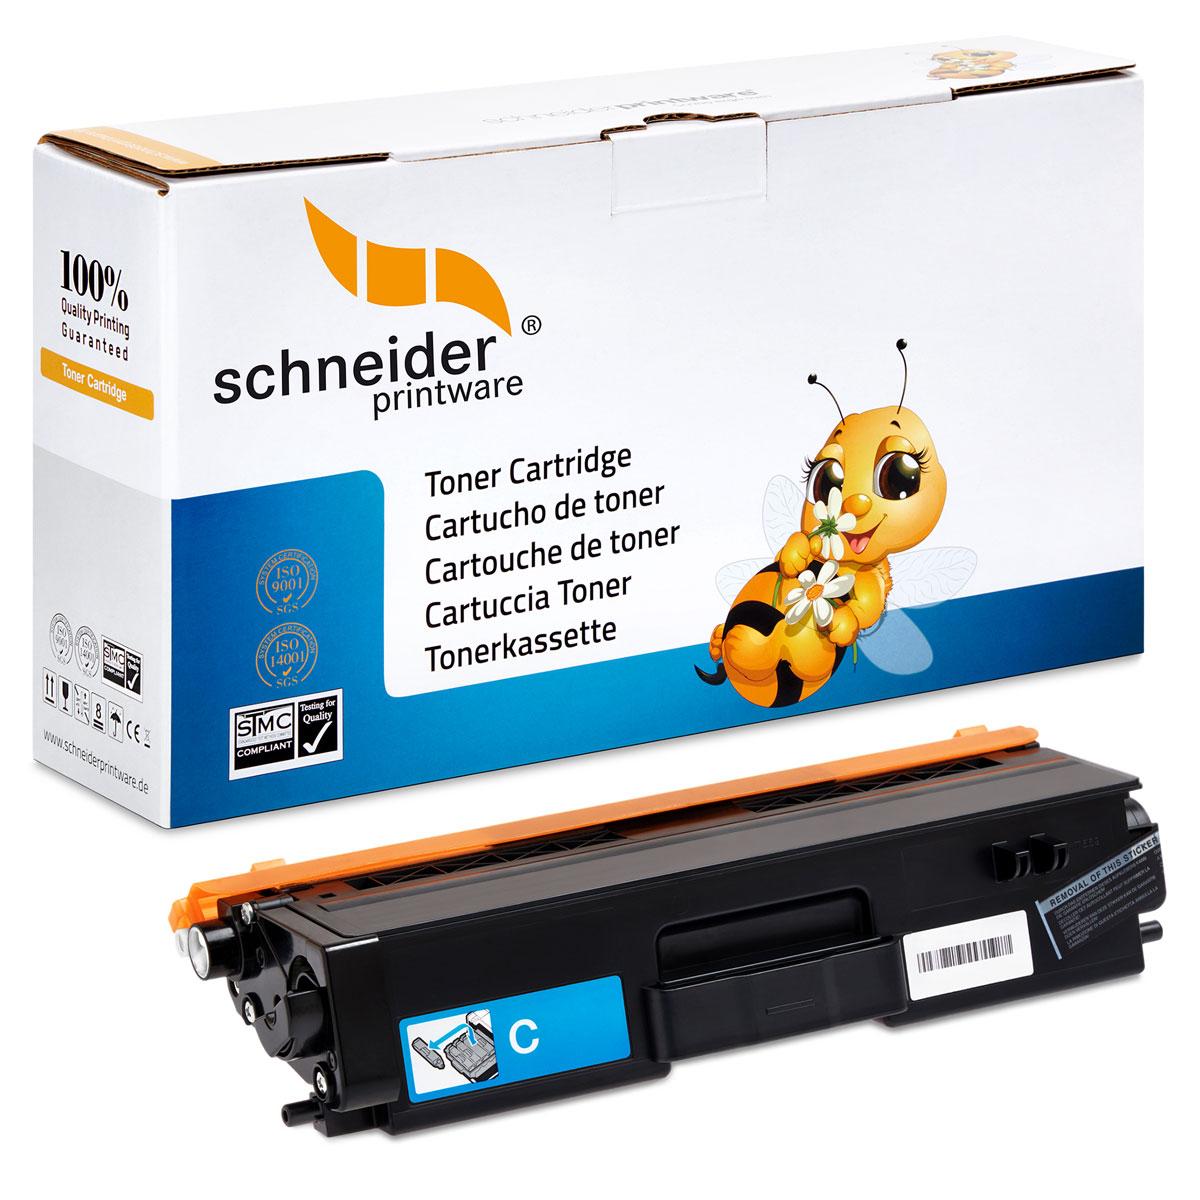 SCHNEIDERPRINTWARE Schneiderprintware Toner (TN-421) Brothern Toner Cyan C ersetzt TN-421